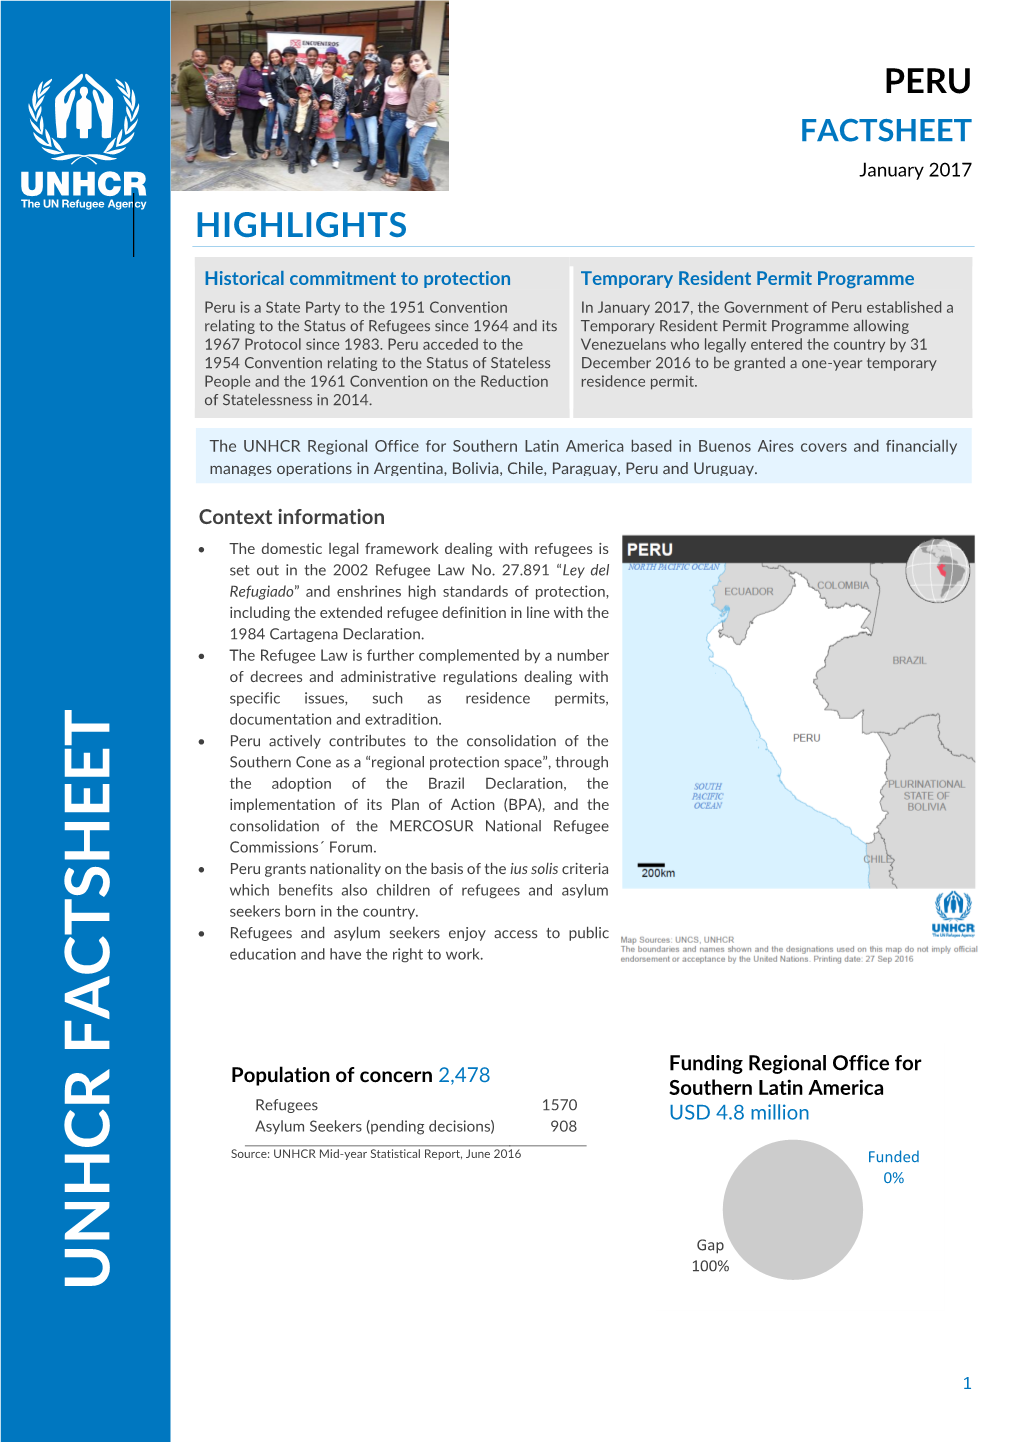 UNHCR Factsheet - Peru